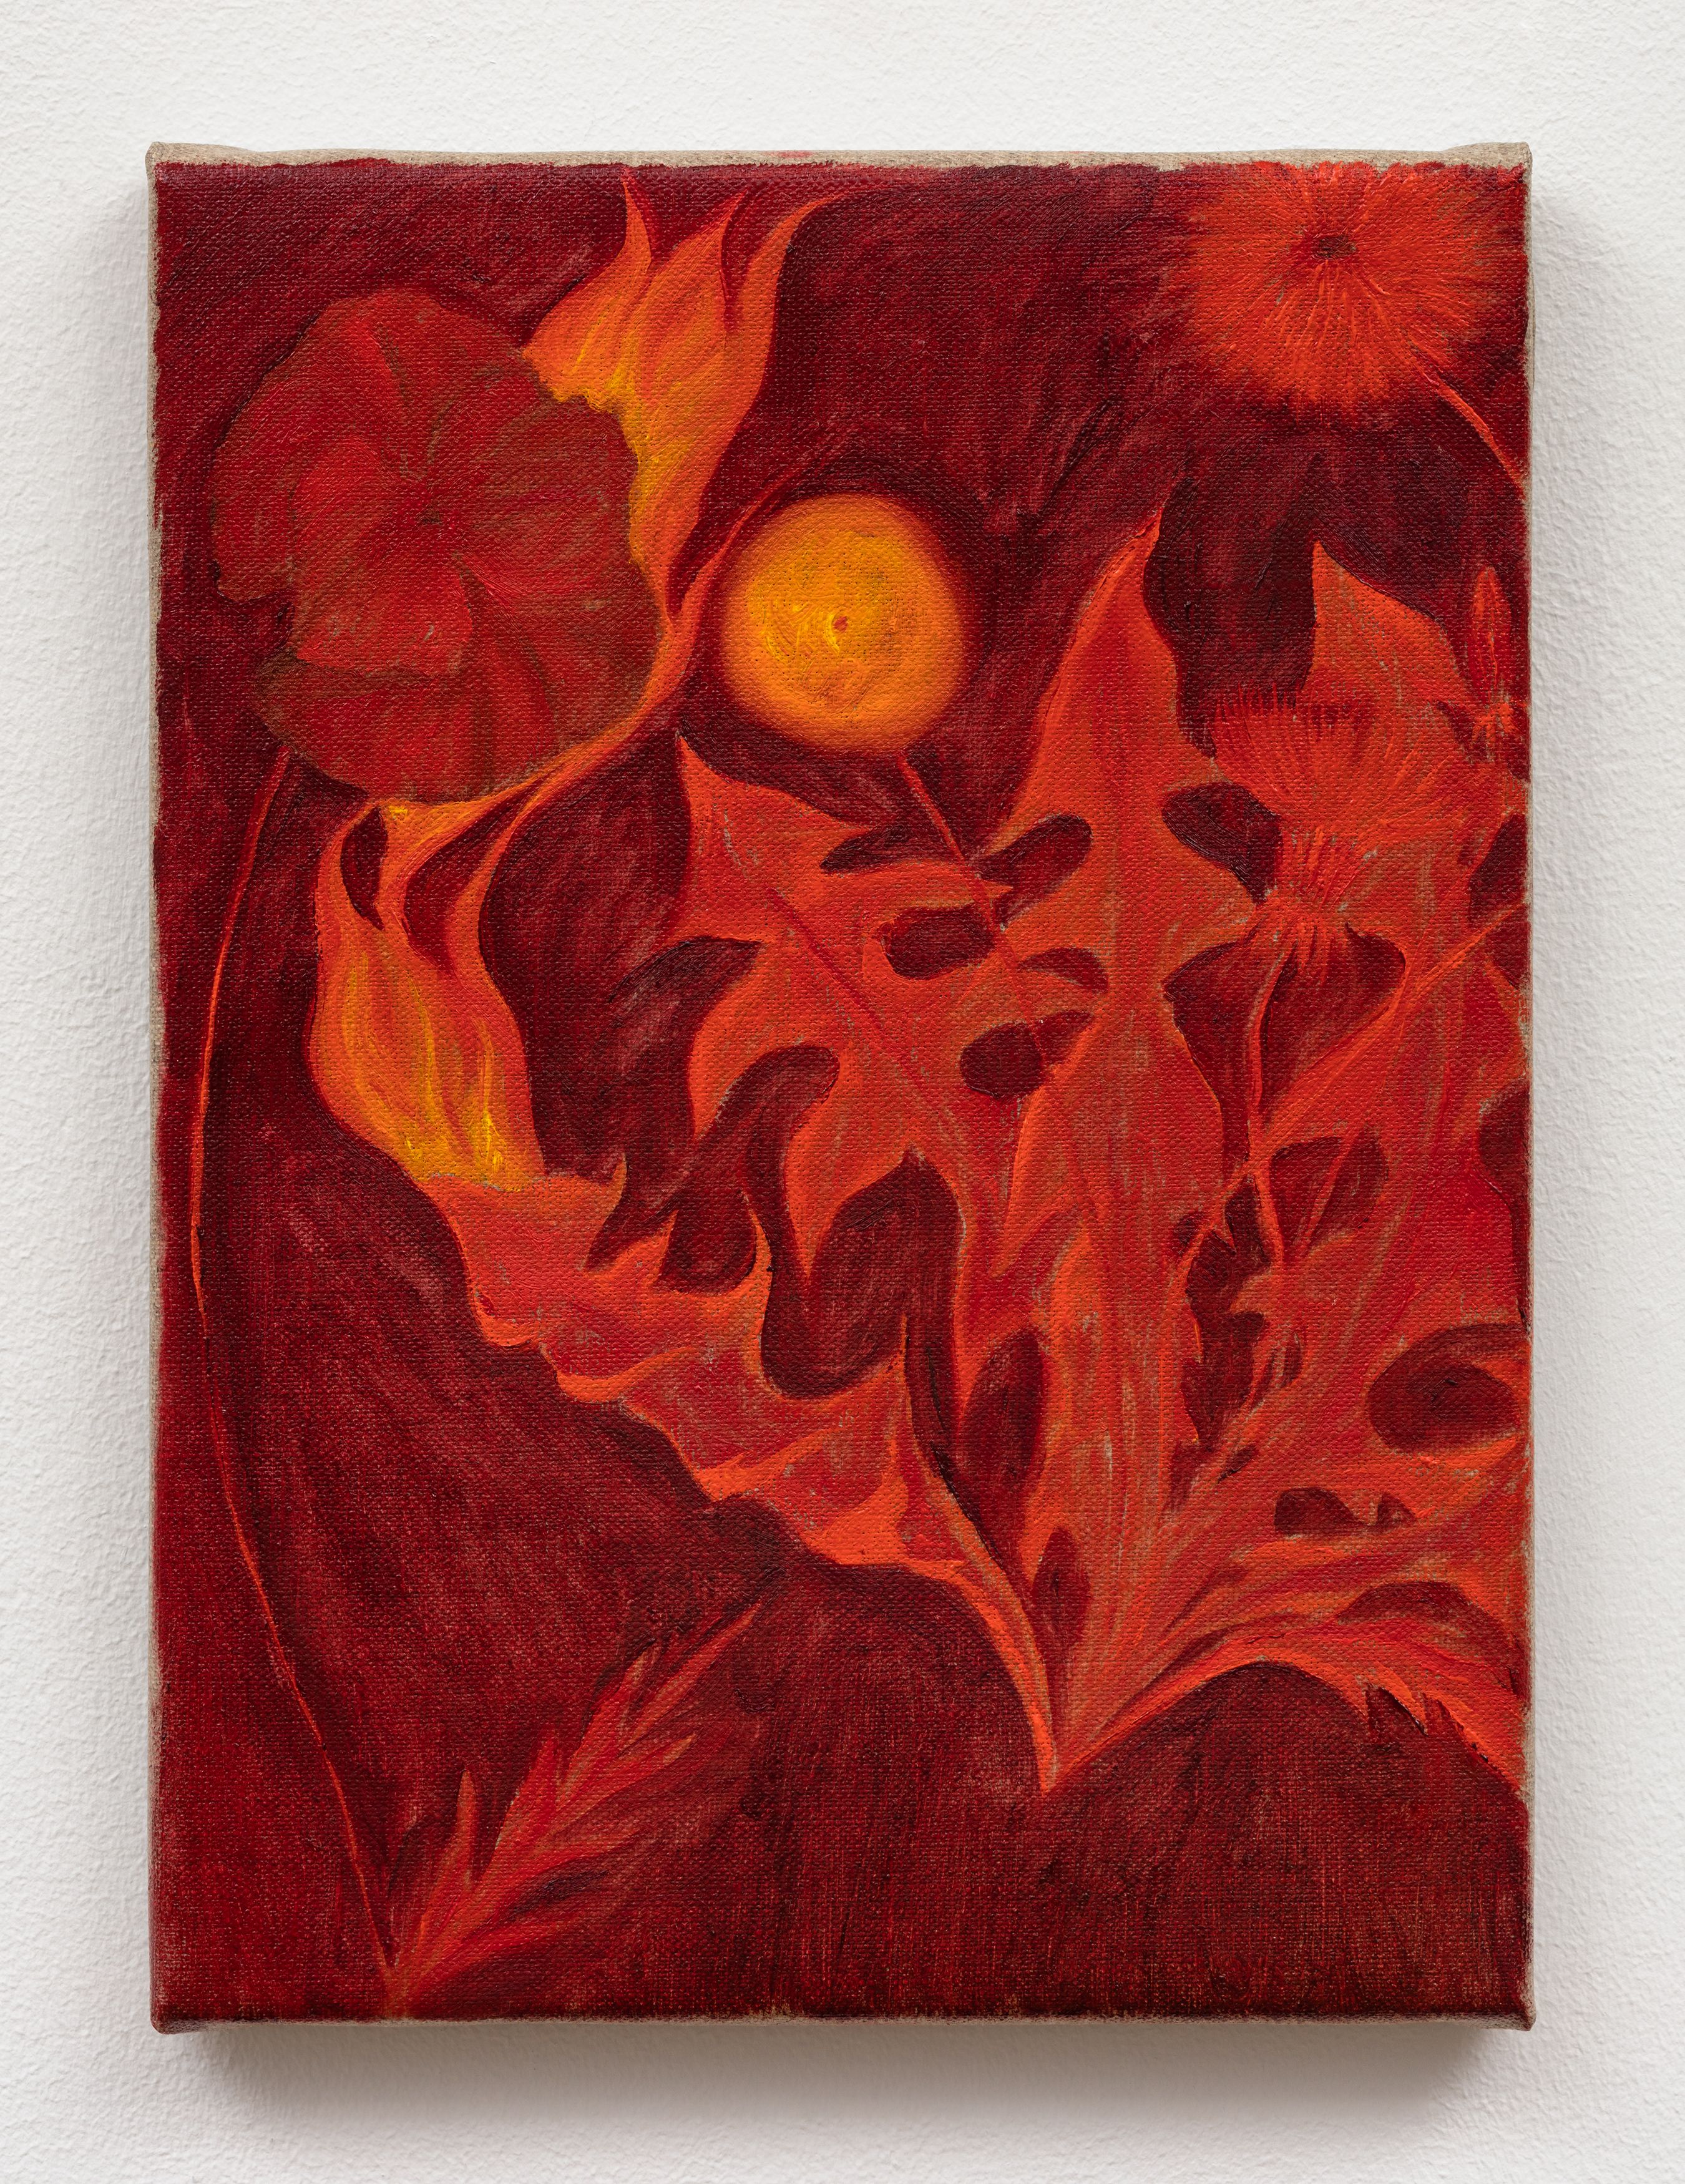 Srijon Chowdhury, Poppy and Dandelion on Fire, 2020, oil on linen, 12 x 9 in. (30.48 x 22.86 cm) 